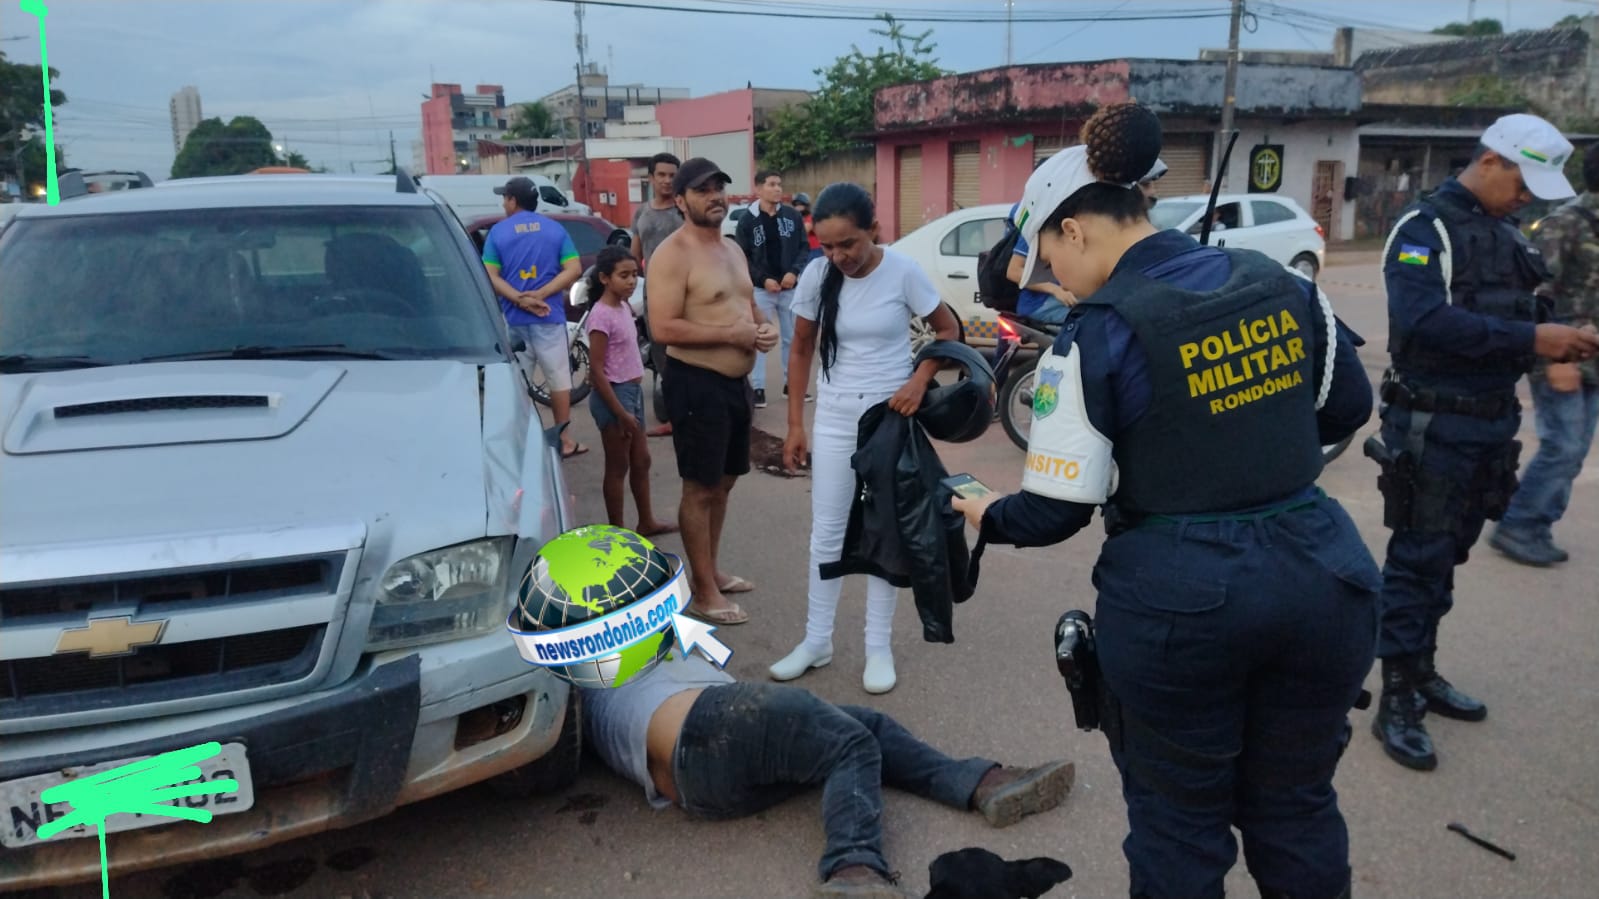 Caminhonete invade preferencial e causa grave acidente com moto - News Rondônia